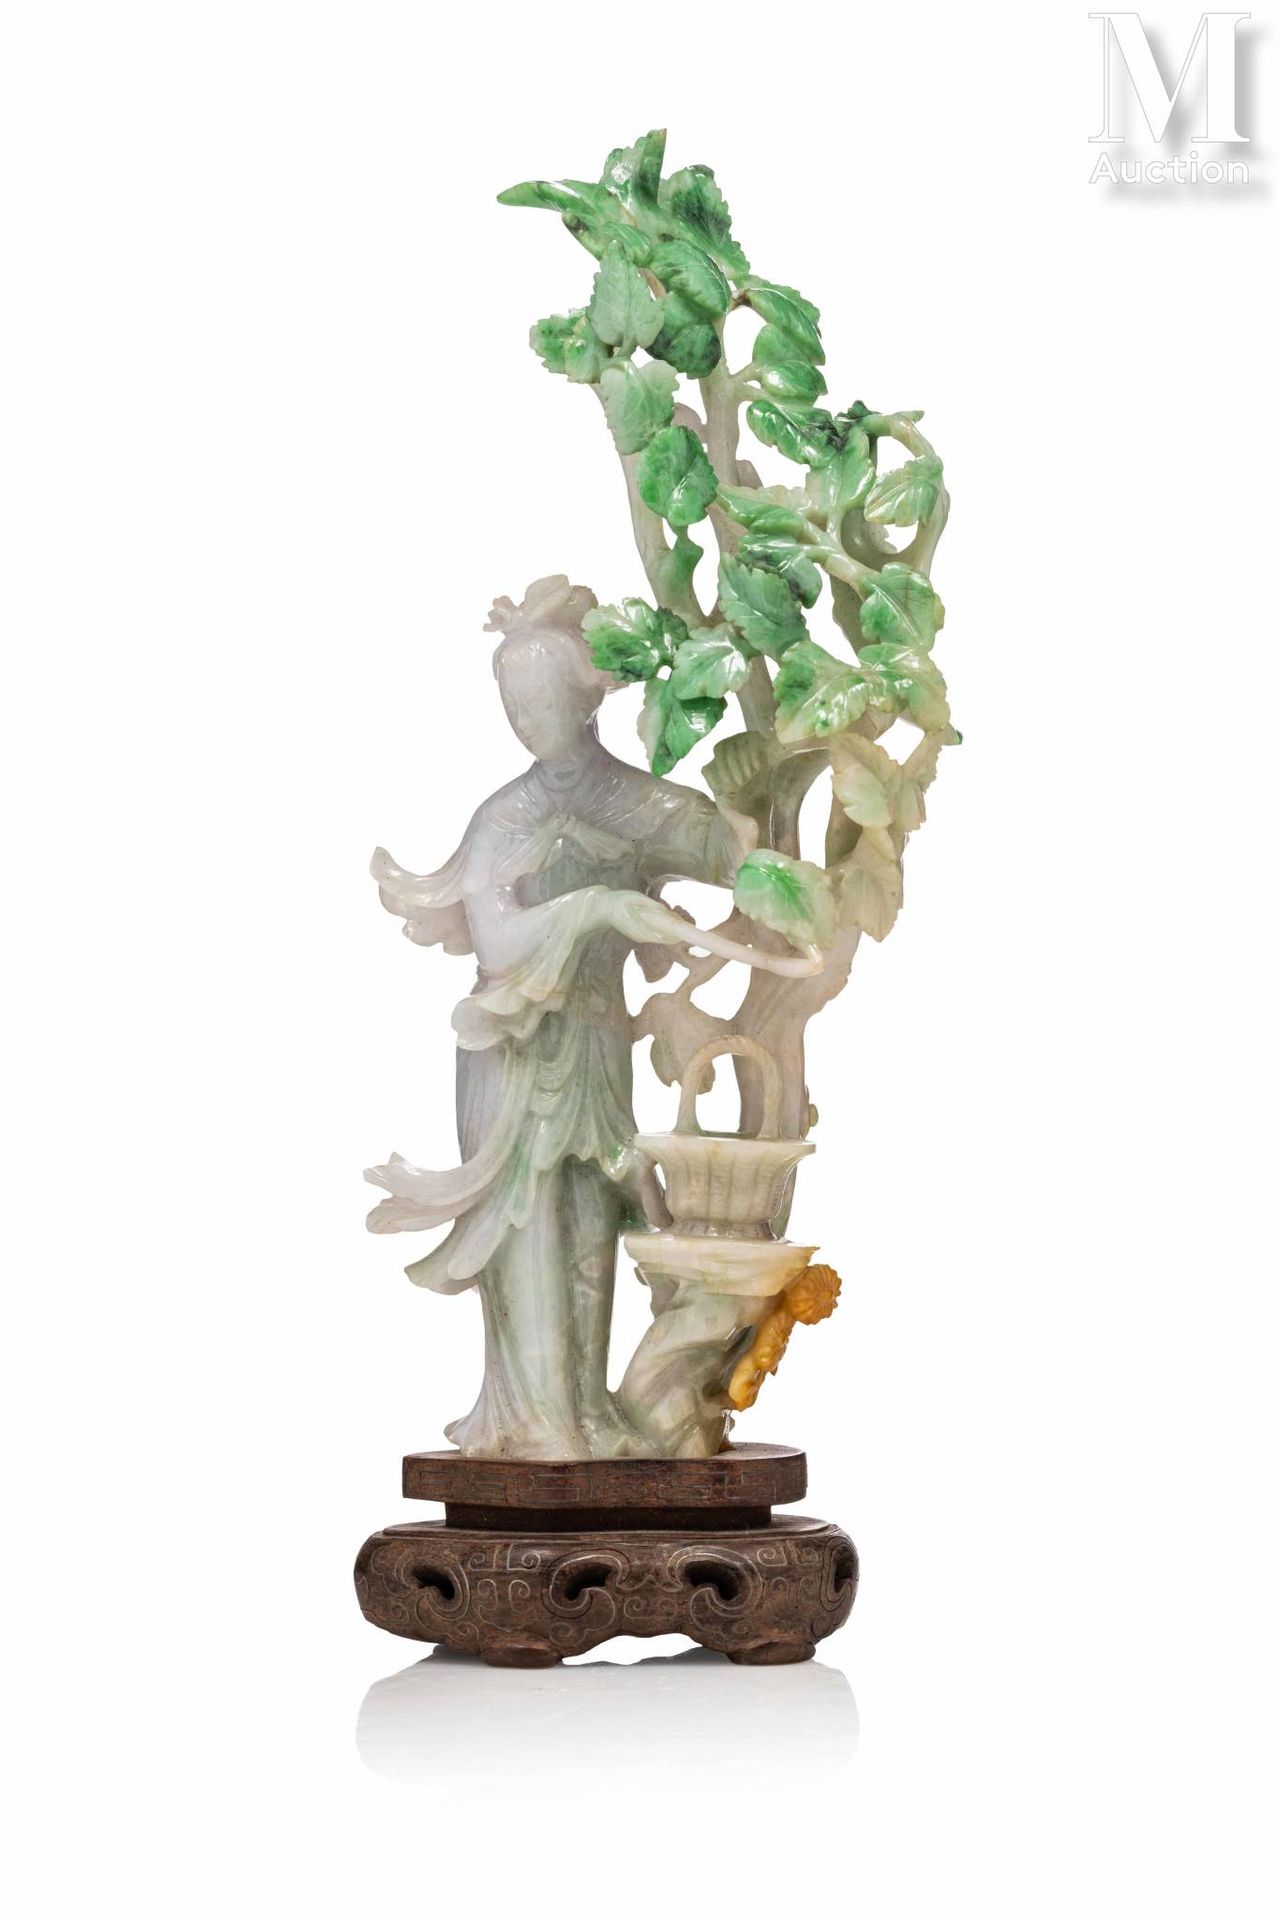 CHINE, XXe siècle 翡翠雕像

描绘了一个优雅的女人站在树叶下的篮子旁，石头的颜色是浅绿色的，带有苹果绿的色调，略带铁锈的味道。有合适的木质底座&hellip;